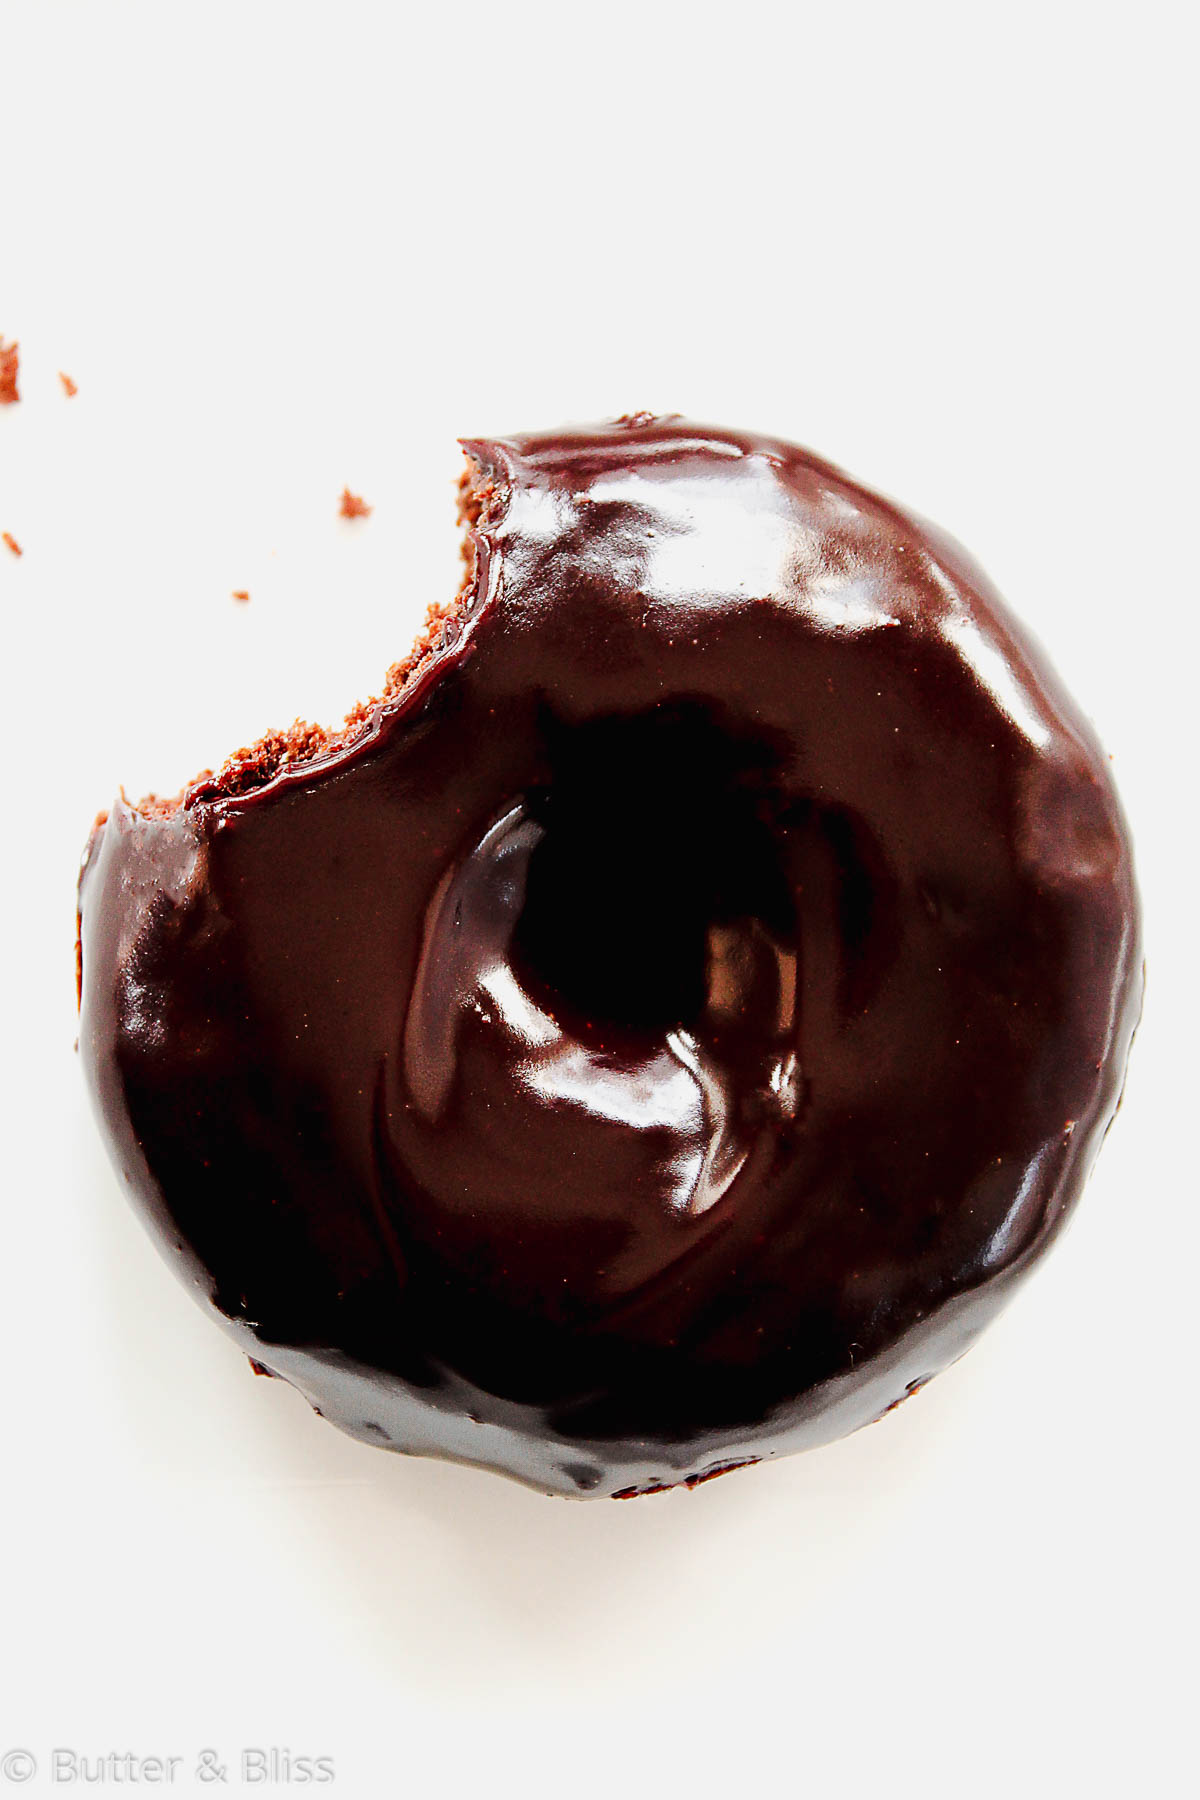 Chocolate glazed donut with a bite